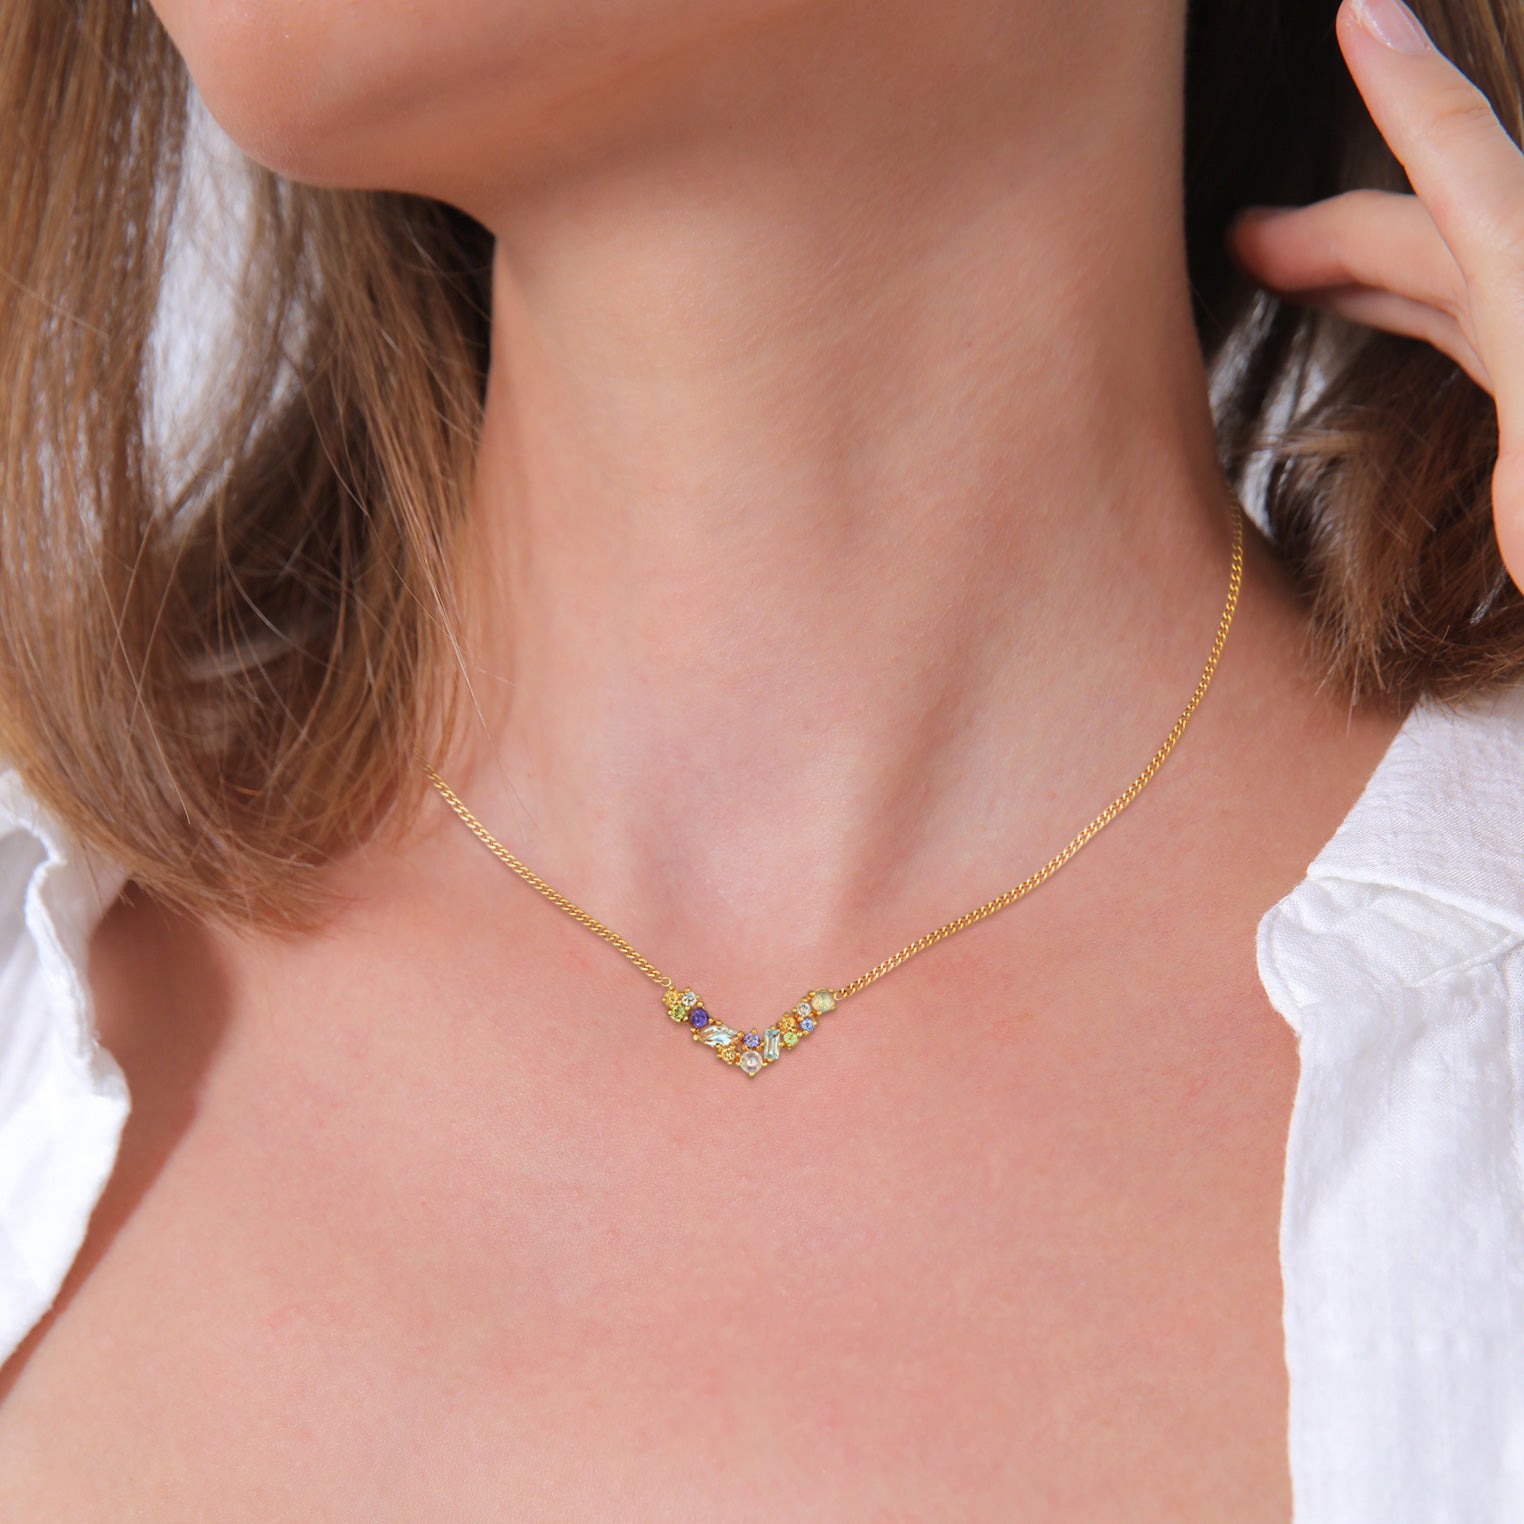 Gold - Elli PREMIUM | Halskette V-Form | Onyx, Mondstein, Topas (Bunt) | 925er Sterling Silber vergoldet